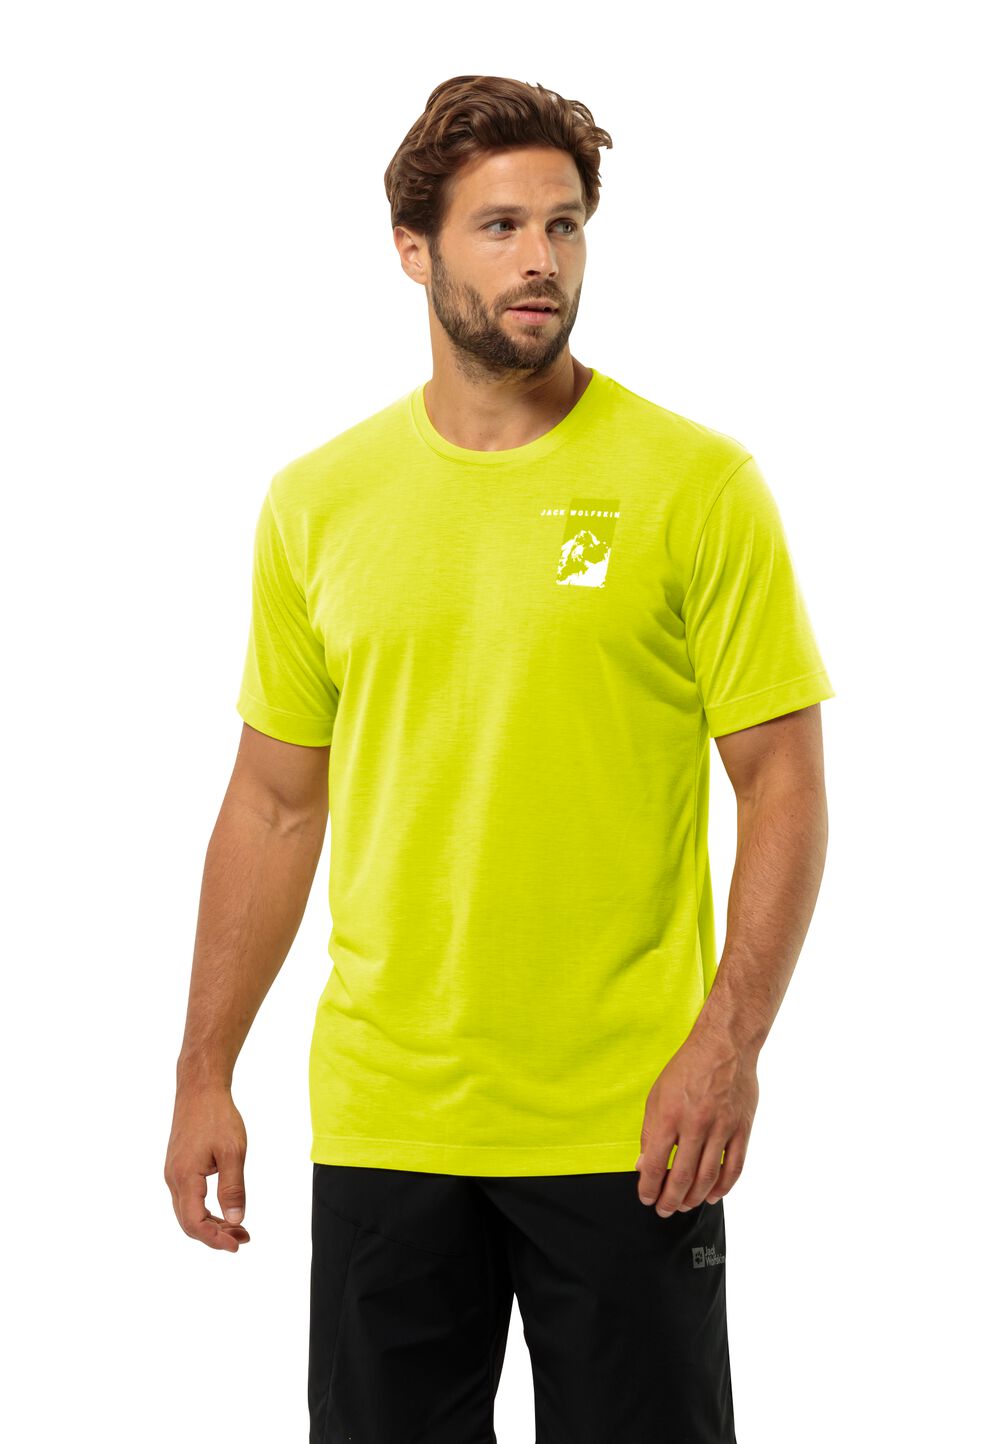 Jack Wolfskin Vonnan S S Graphic T-Shirt Men Functioneel shirt Heren L oranje firefly